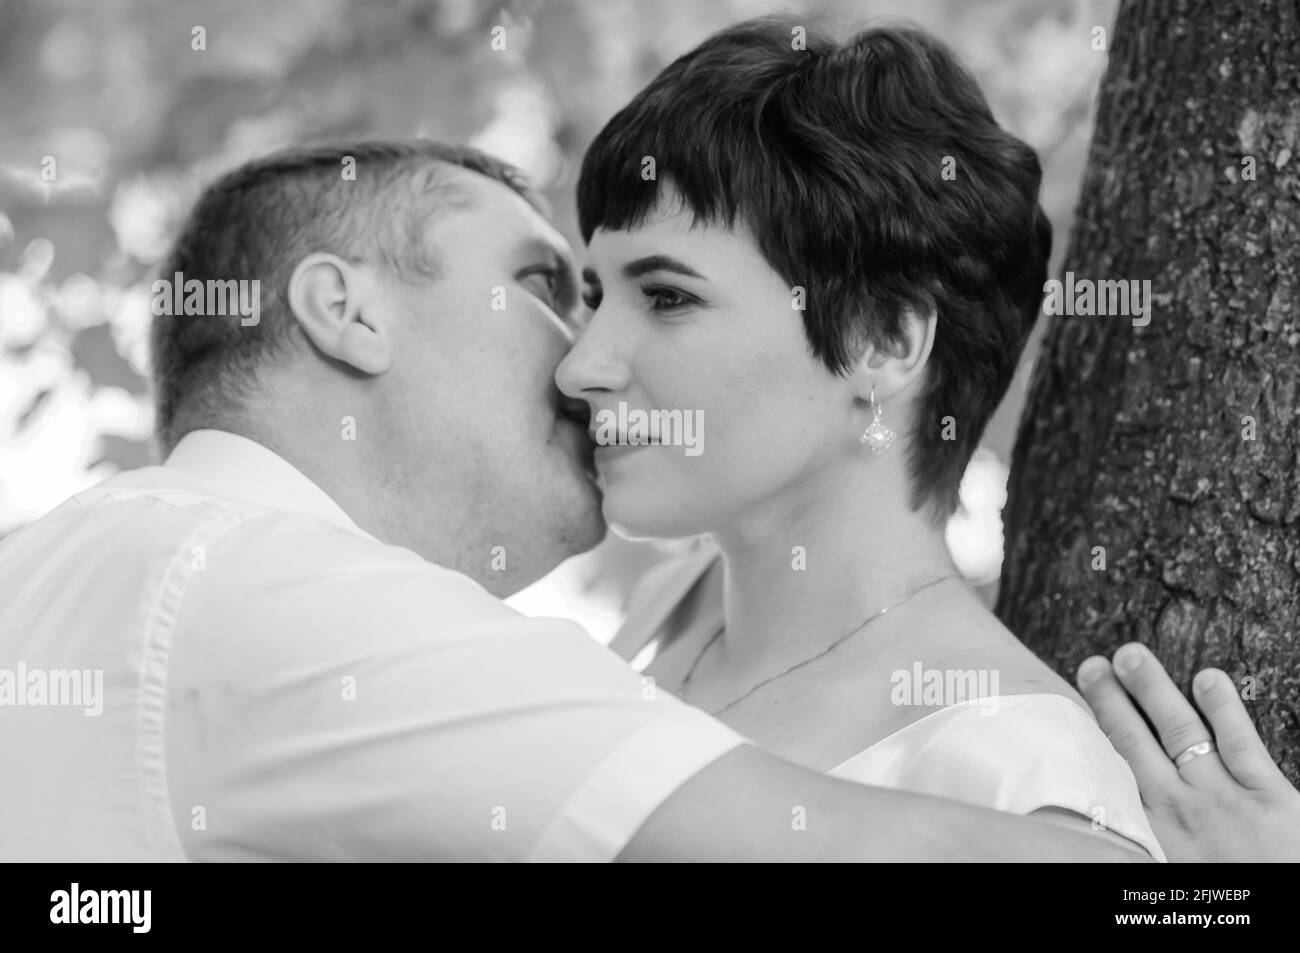 Brautpaar umarmen und küssen sich auf dem Hintergrund des Waldes Stockfoto